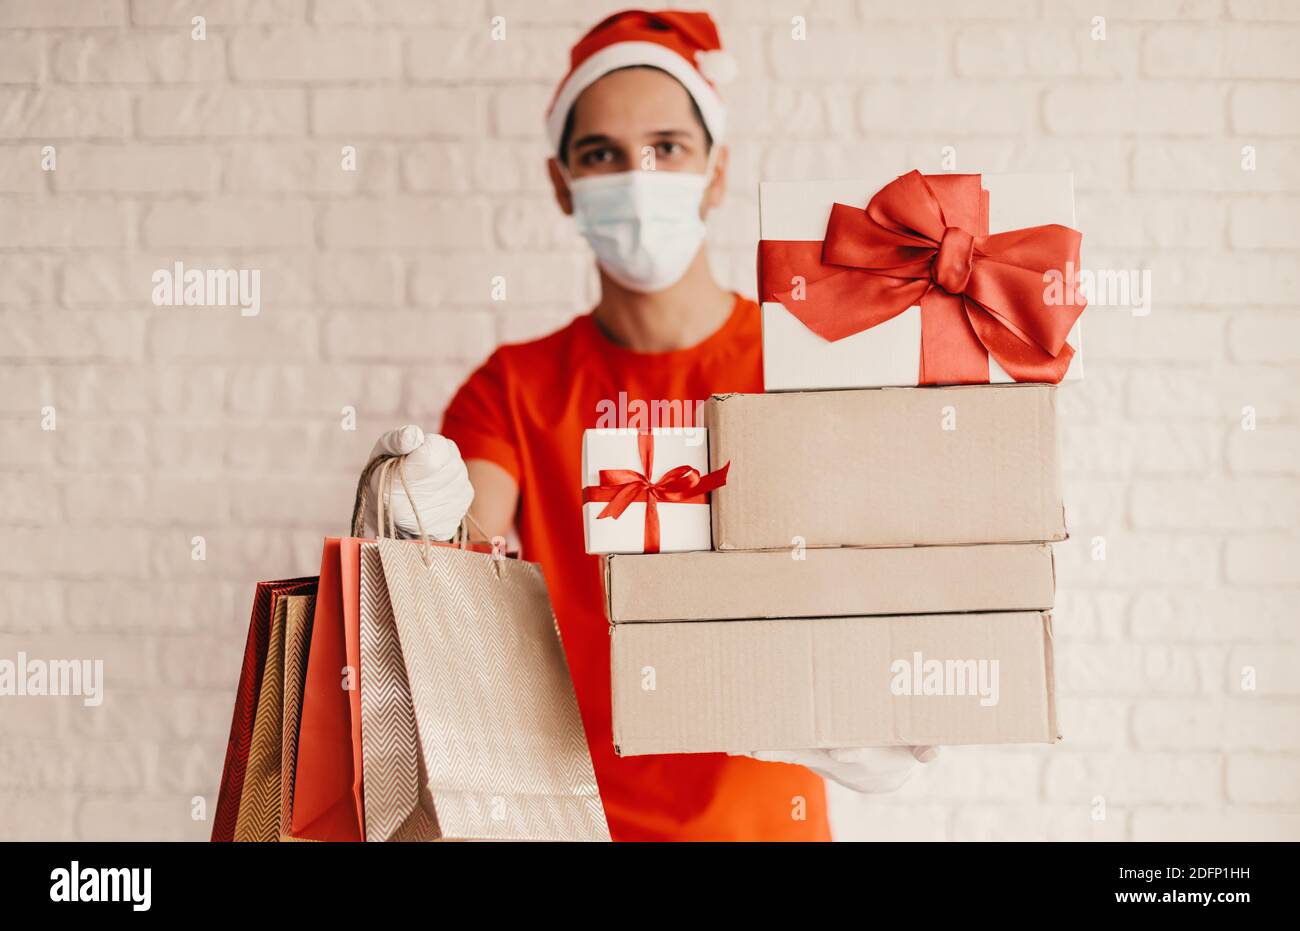 Bon liveur dans le masque médical, chapeau de père Noël, gant de protection porte sacs à provisions, boîtes-cadeaux en carton avec noeud rouge. Jeune homme messagerie en face Banque D'Images